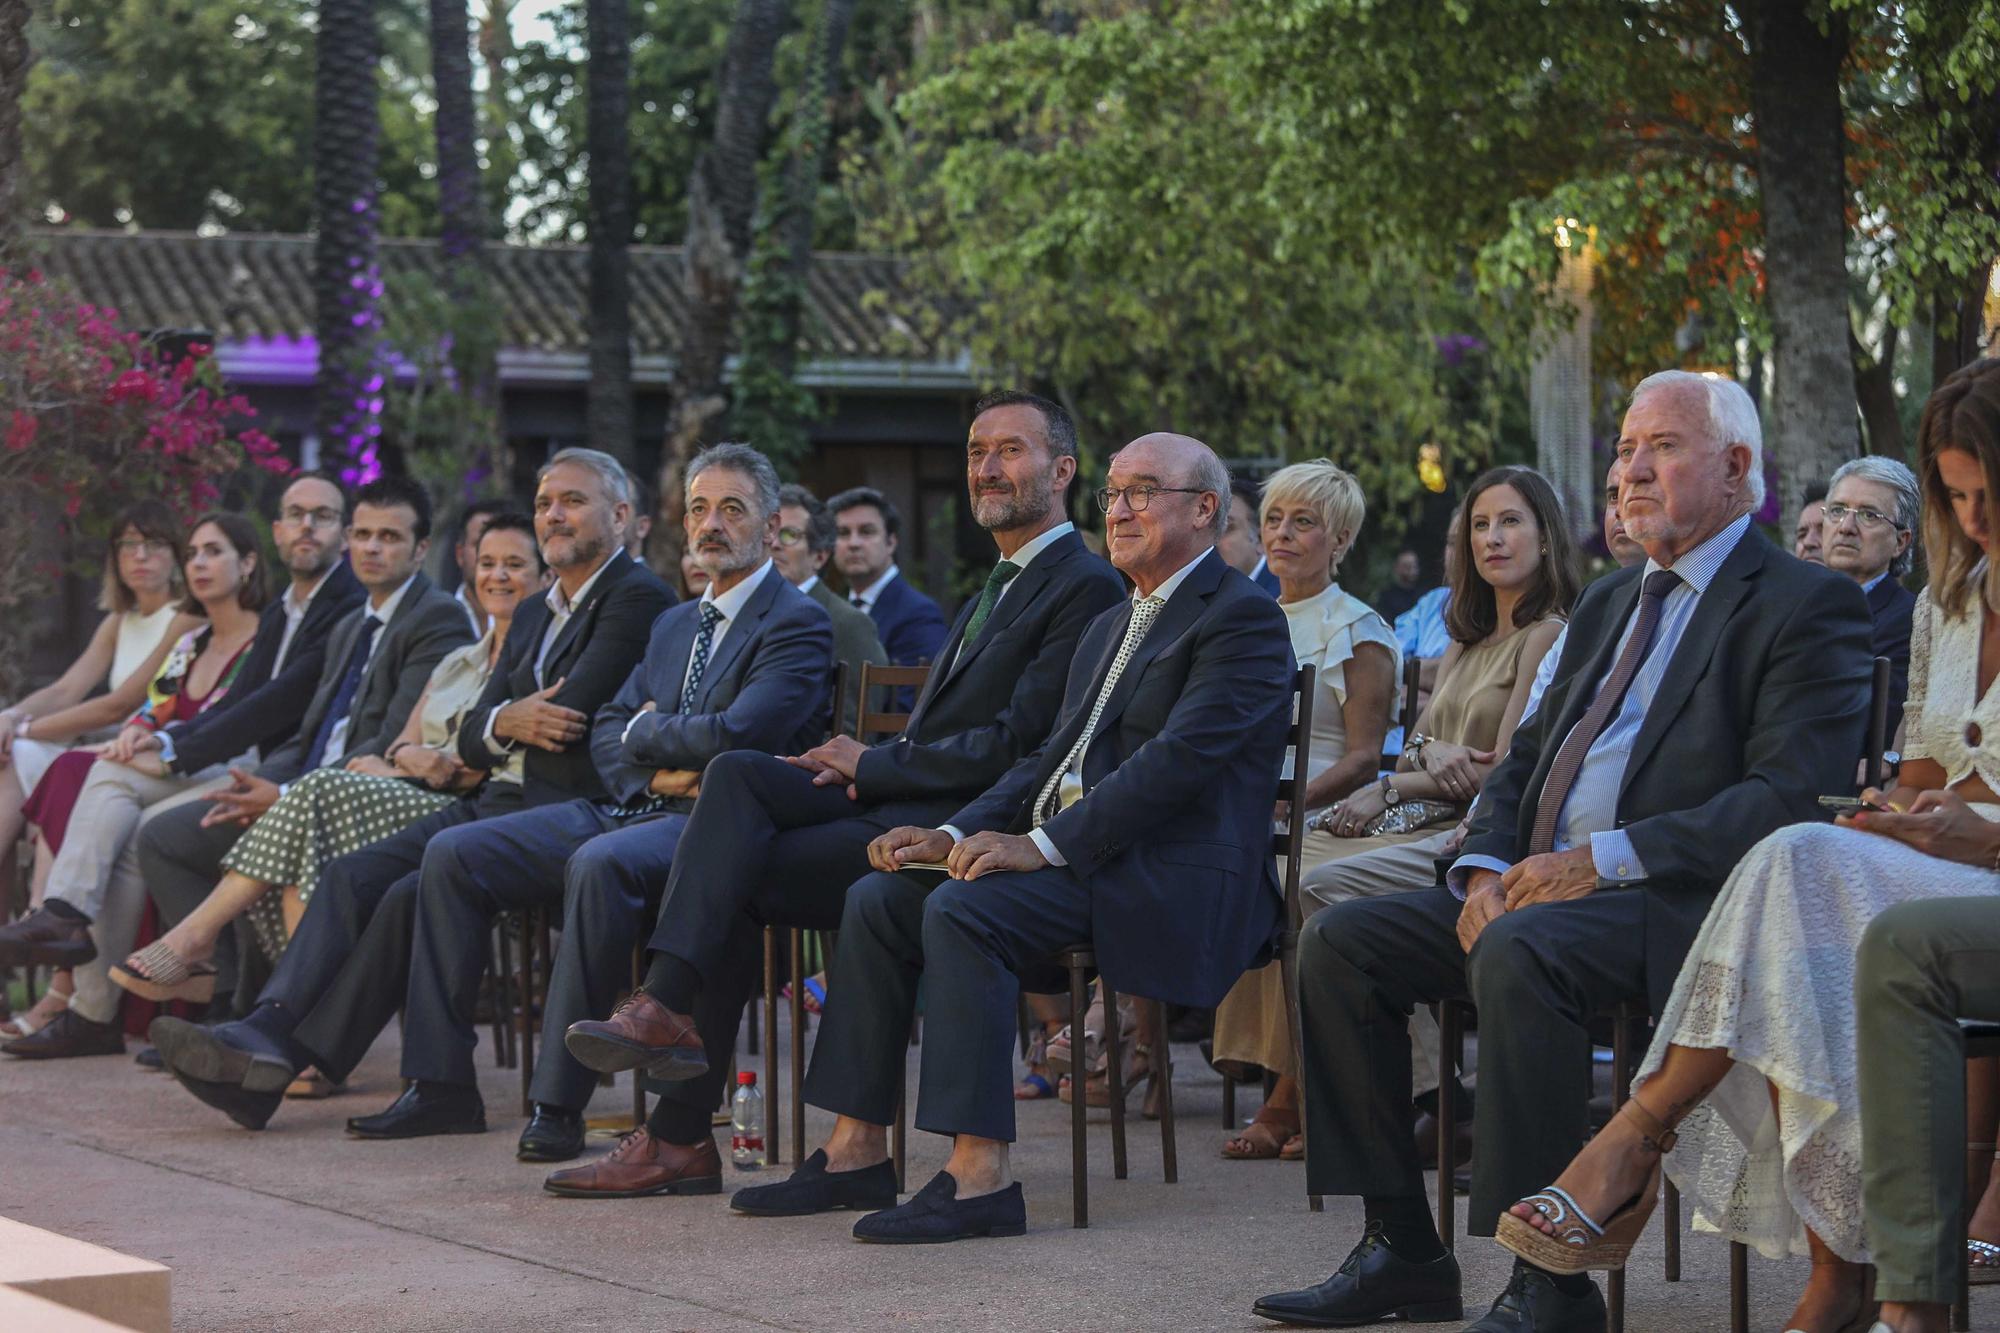 El Hotel Huerto del Cura de Elche celebra su 50 Aniversario